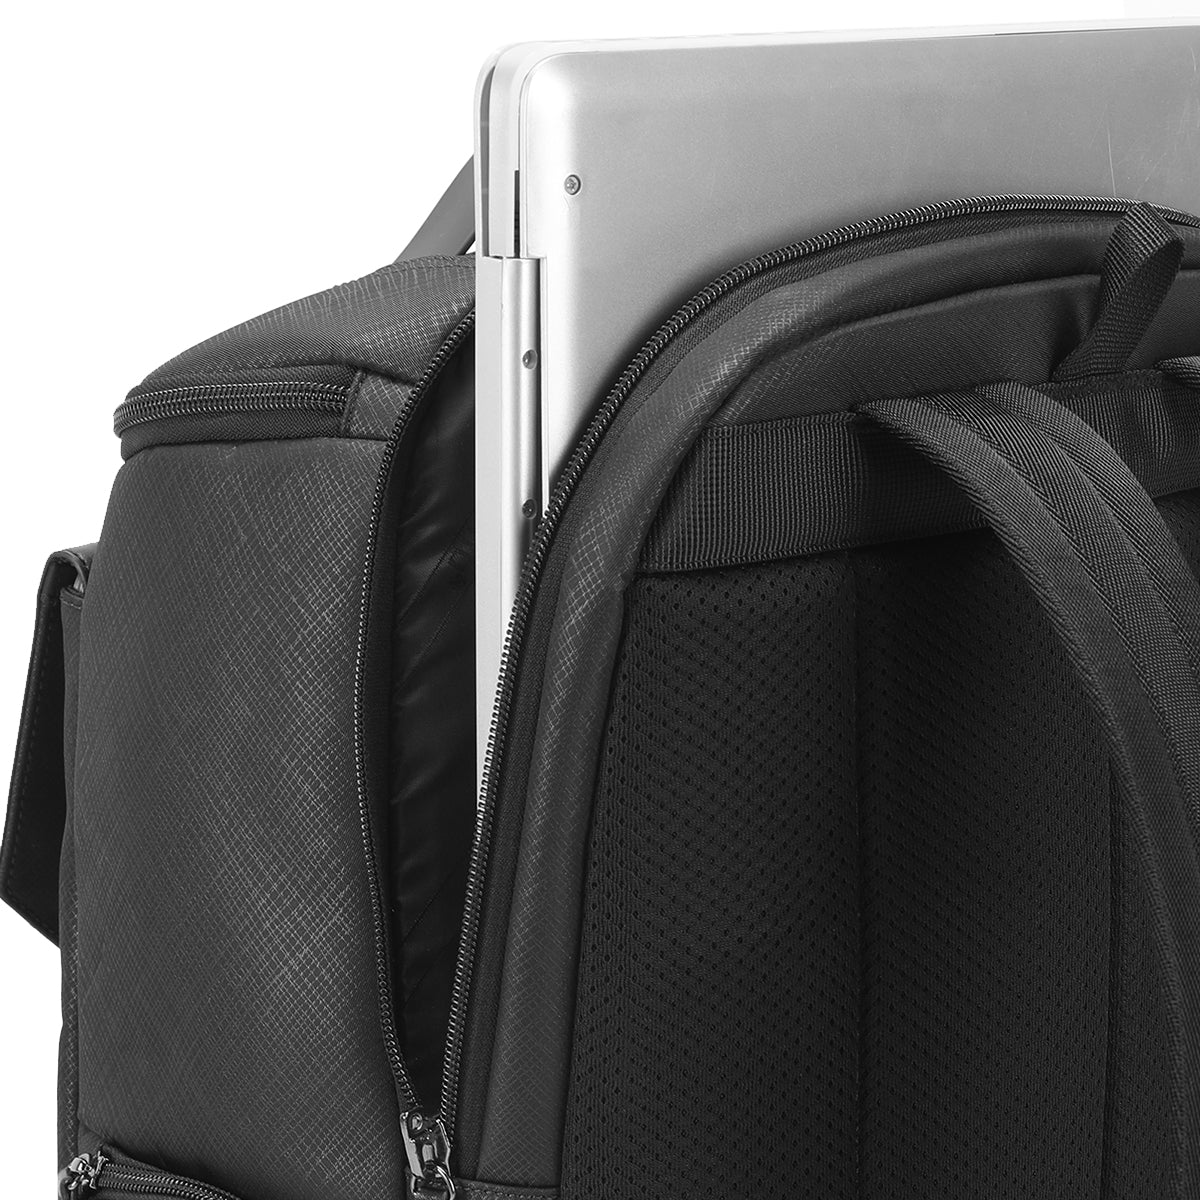 Tigernu TB-L Lead Top Laptop Backpack Black